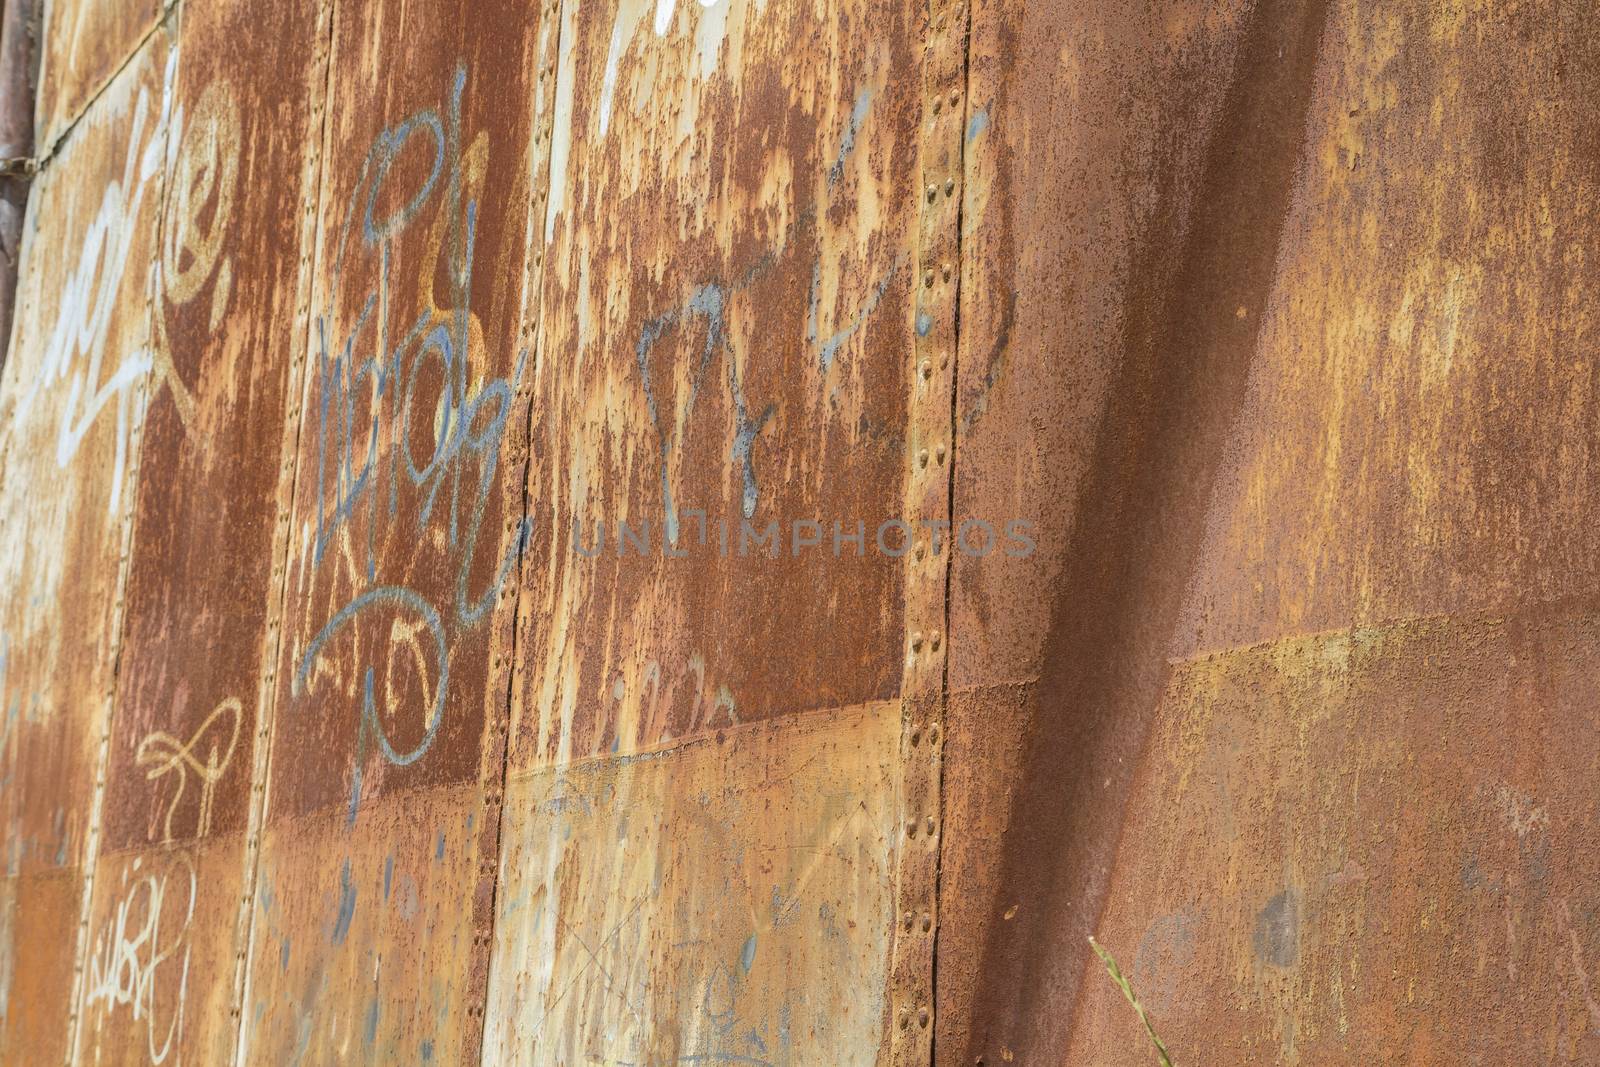 Grafitti, old abandoned train station, rusty iron walls